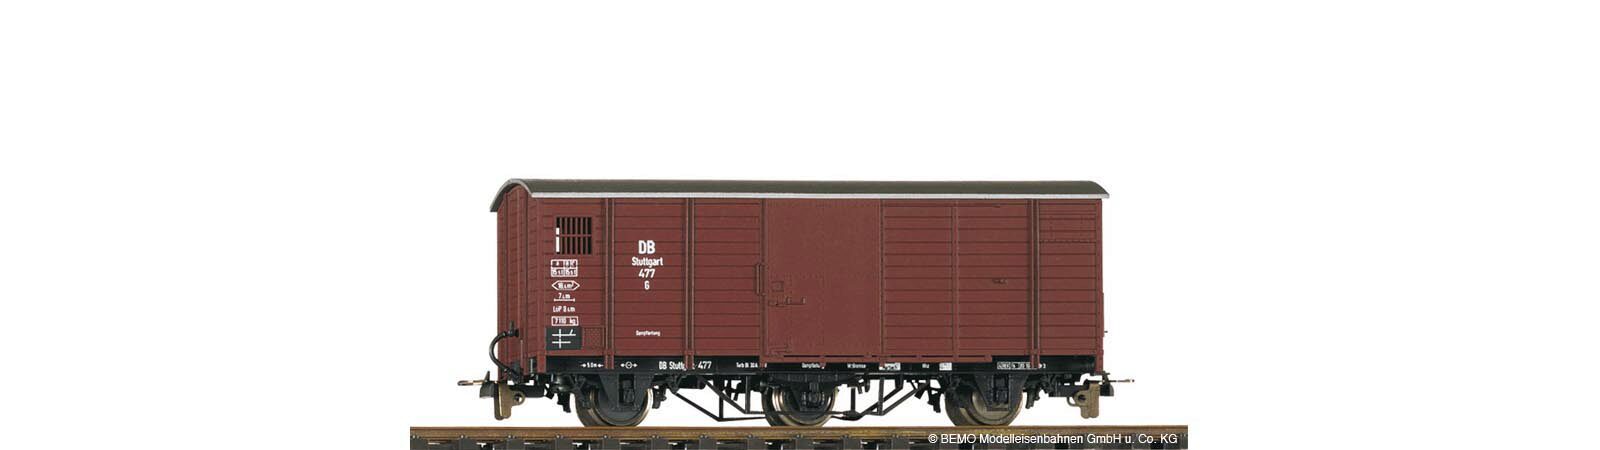 Bemo 2002817 DB G 477 gedeckter Güterwagen